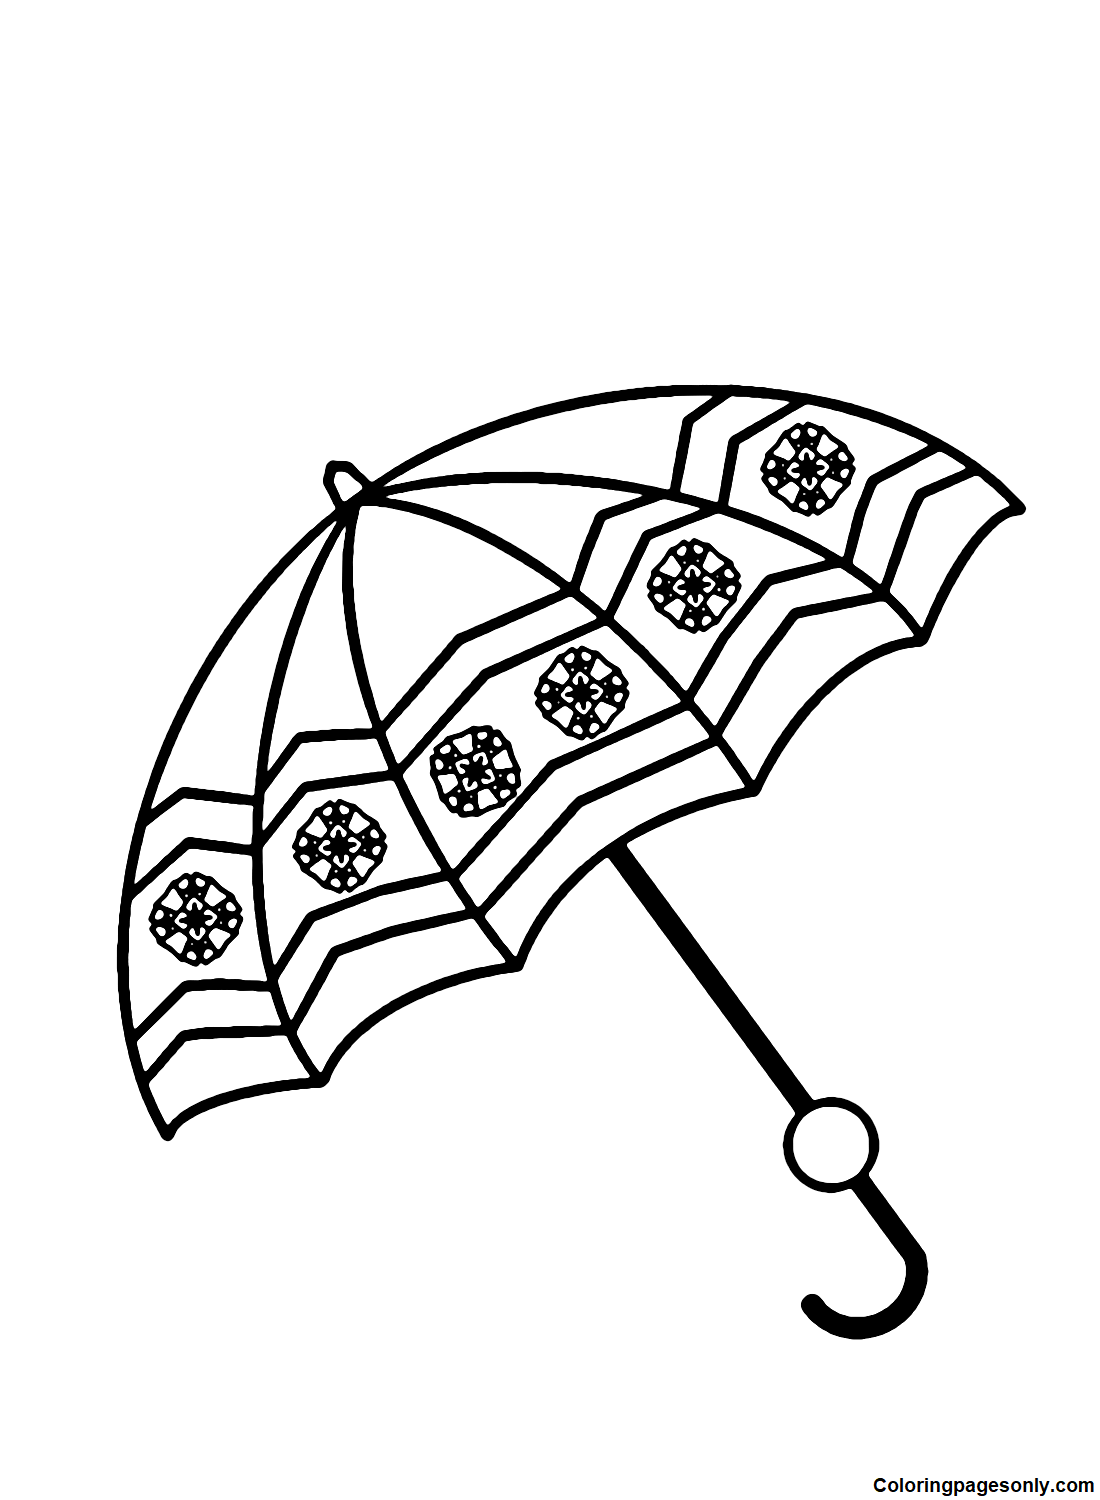 Paraguas fácil de paraguas.